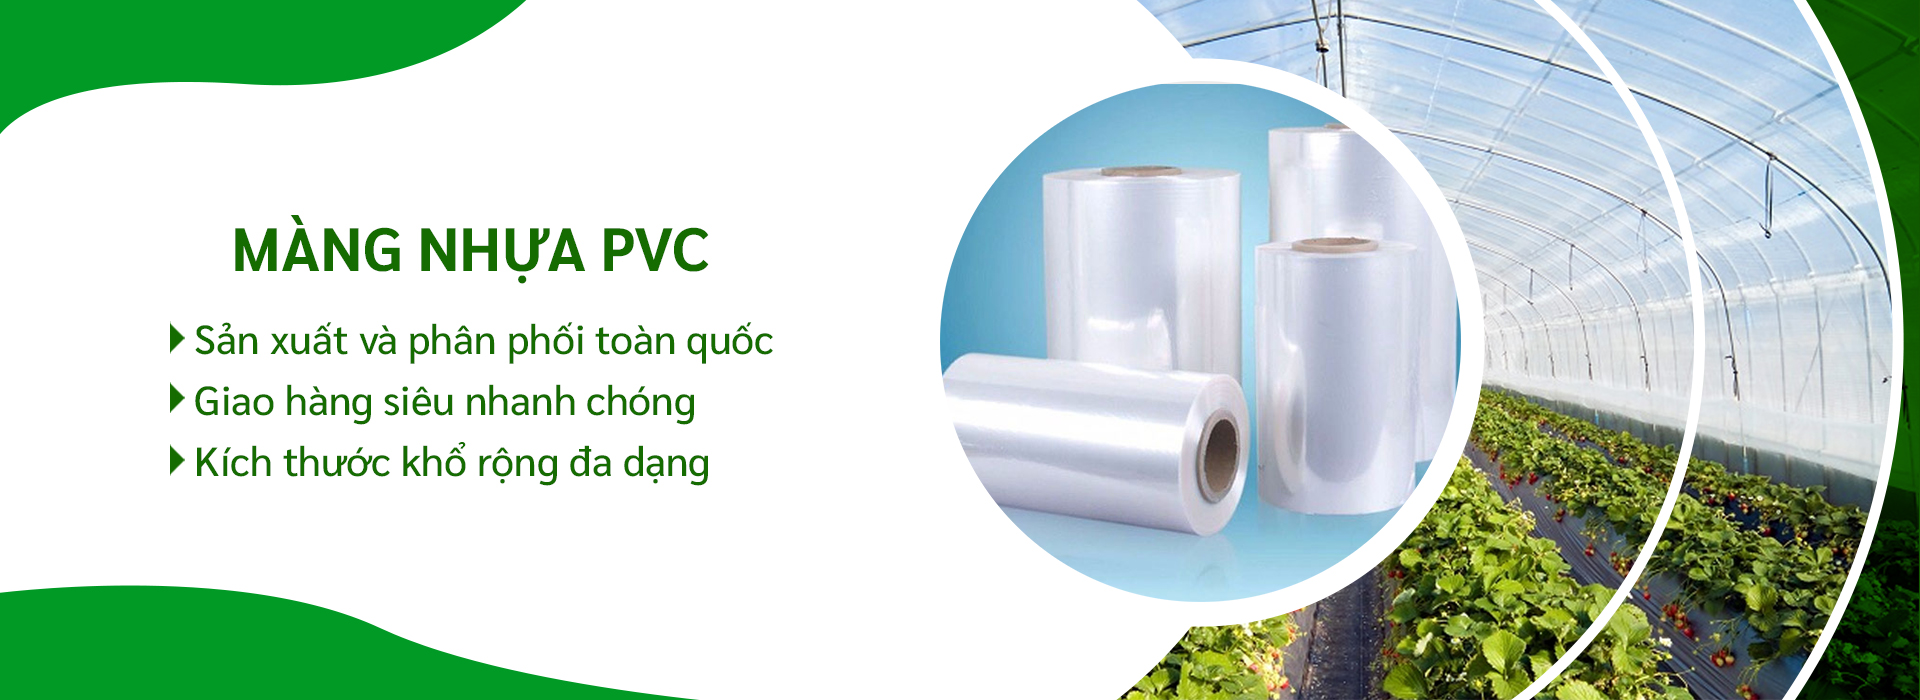 Màng nhựa PVC 